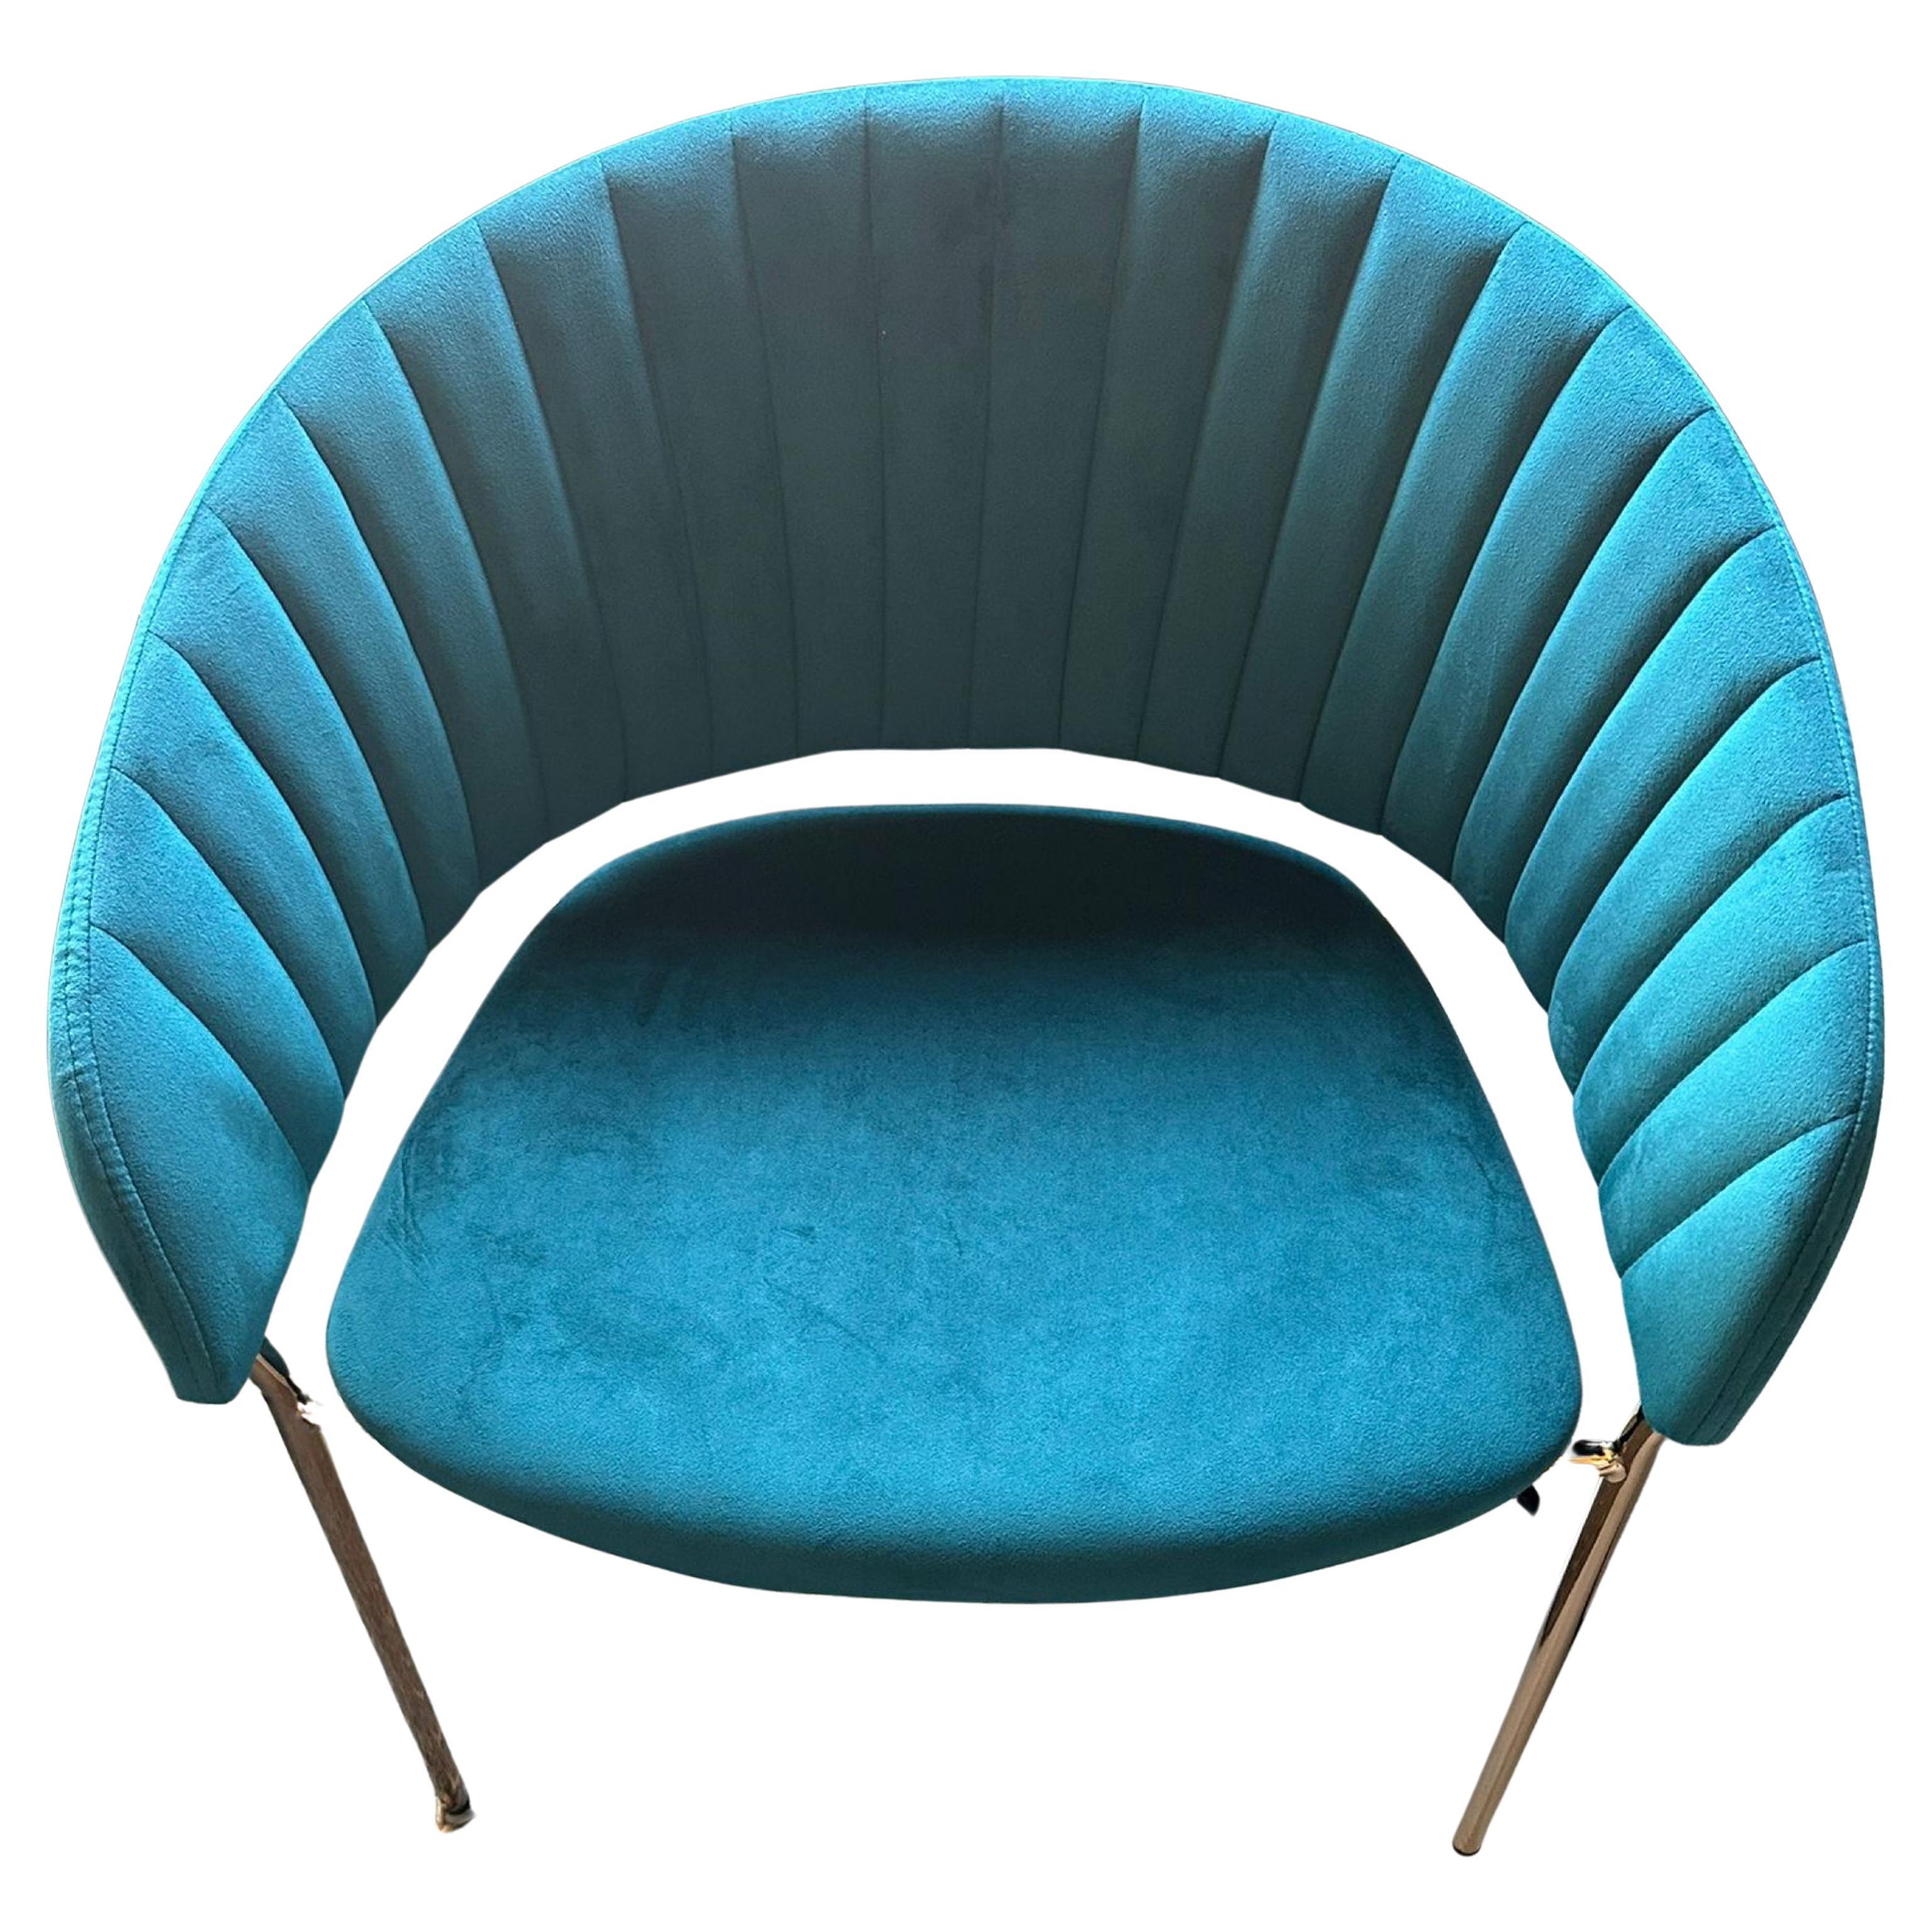 Neue spanische Stühle in Blau „Pavo Real“ mit Baummuster
schöne neue spanische Stühle
73cm x 57cm x 41cm
Brandneu